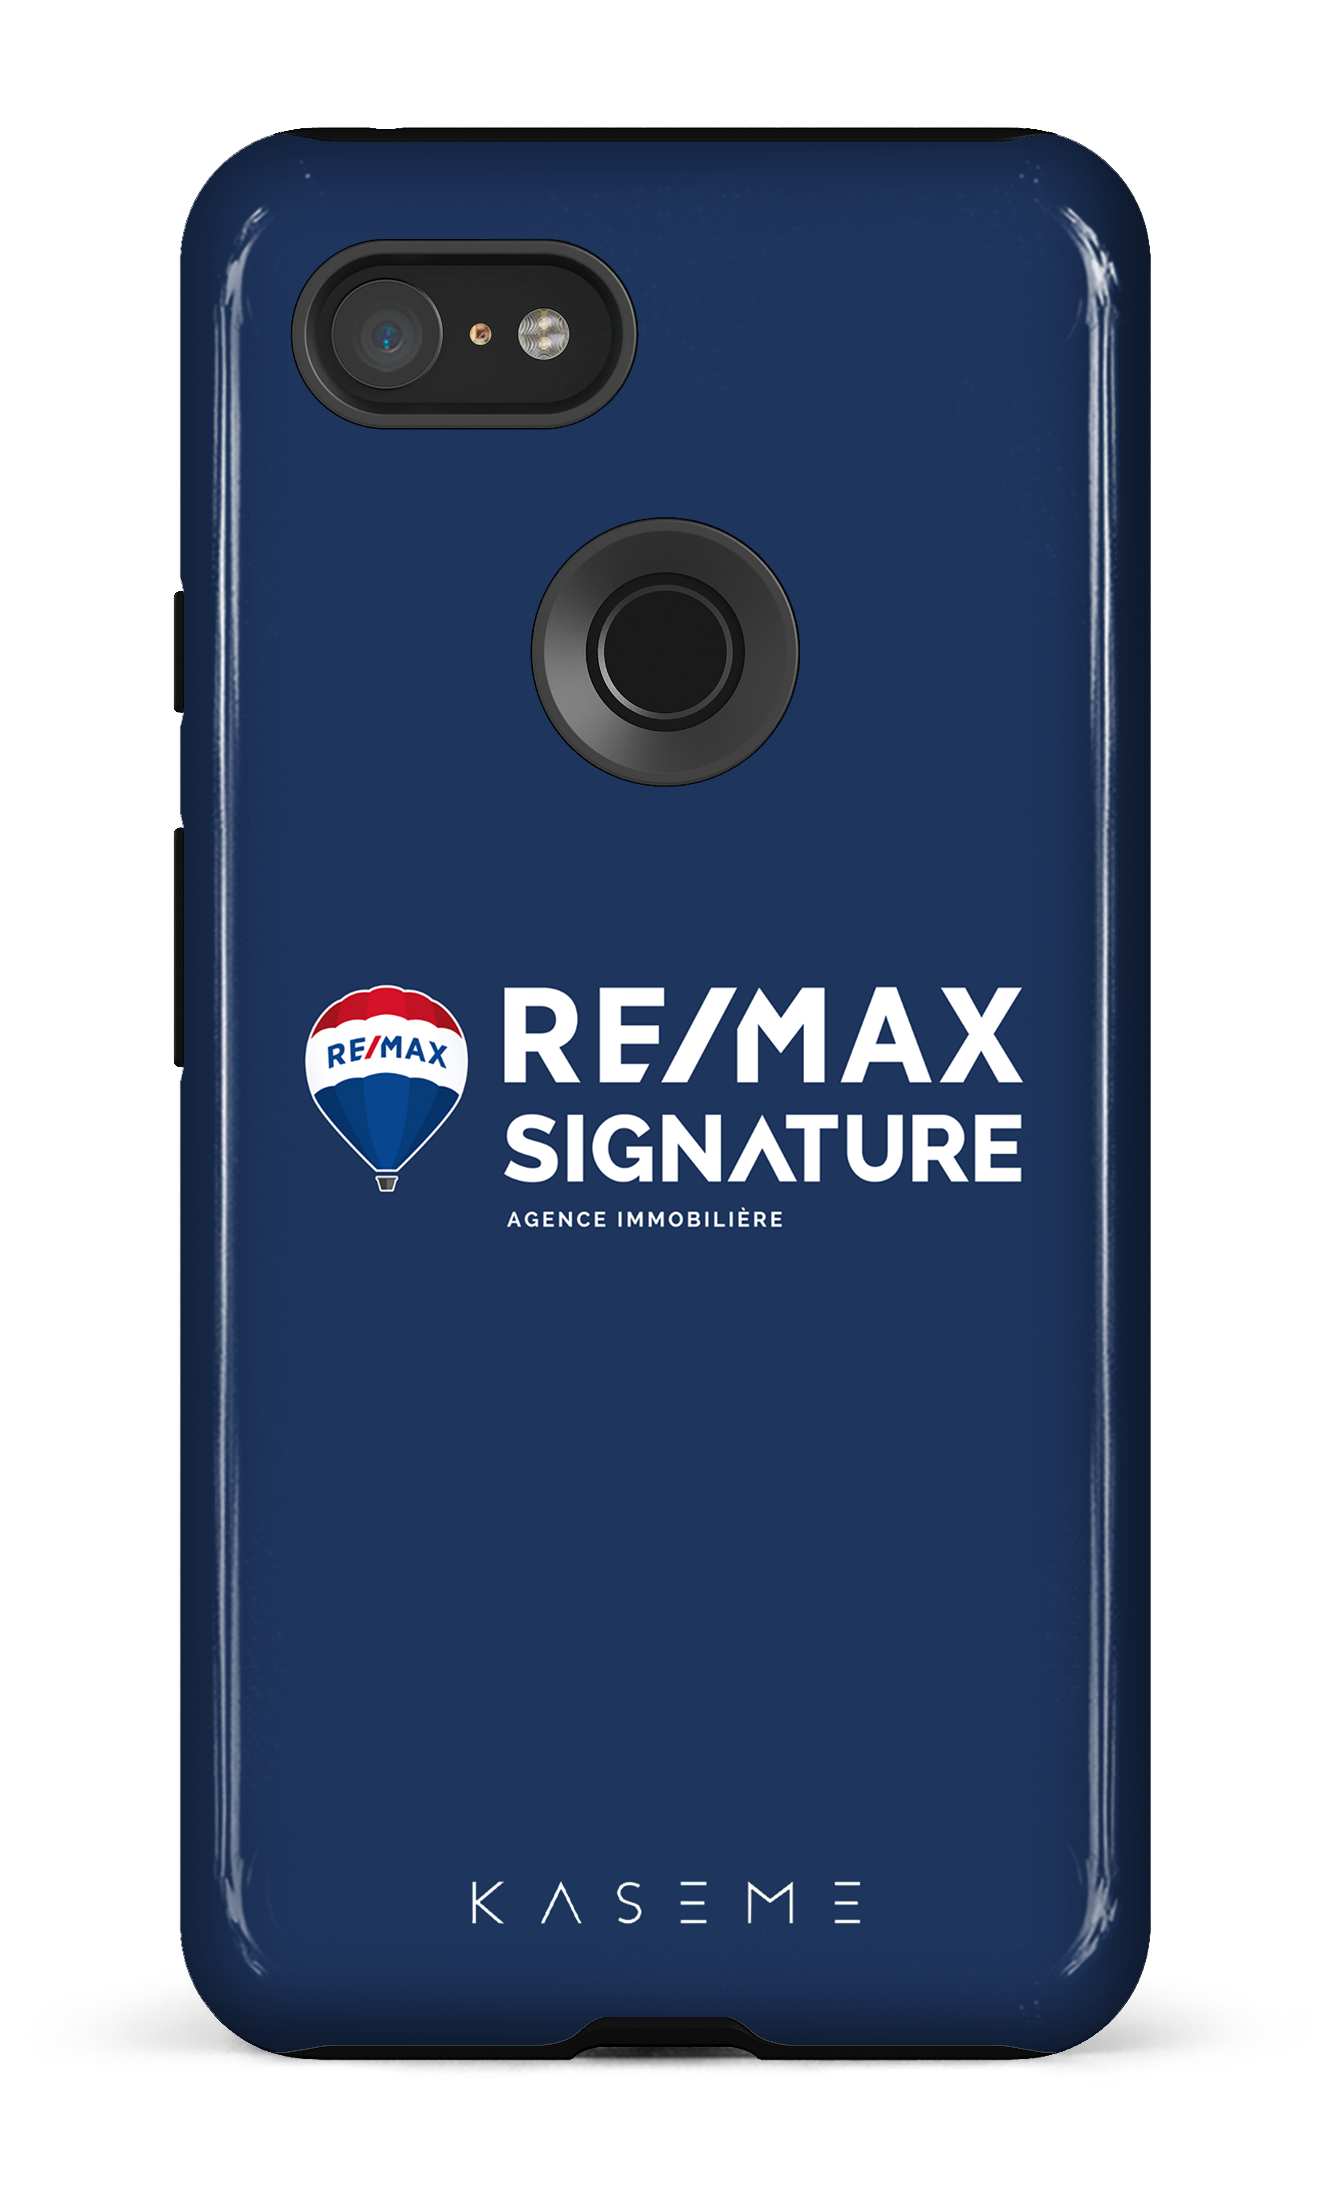 Remax Signature Bleu - Google Pixel 3 XL